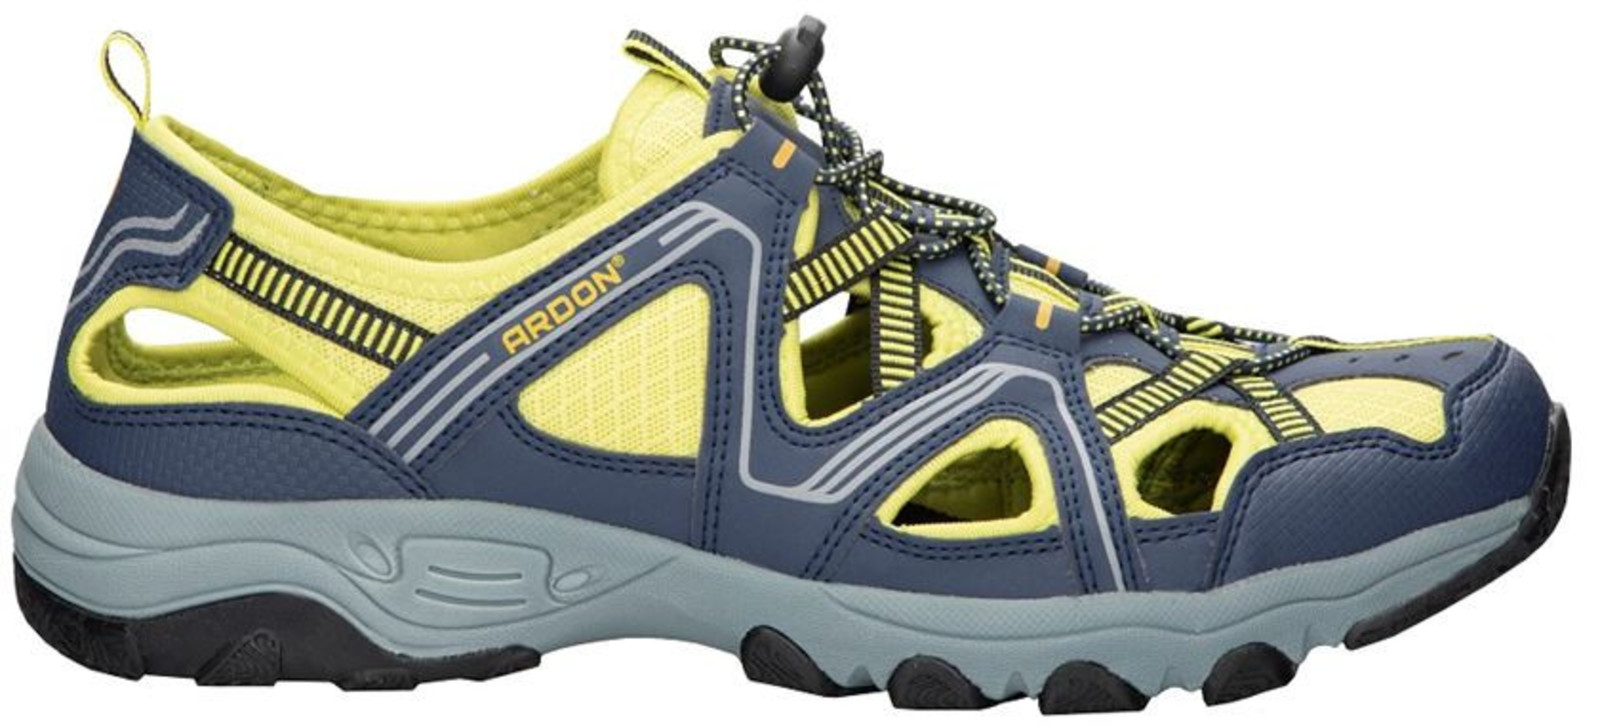 Trekové sandále Ardon Strand - veľkosť: 39, farba: modrá/žltá